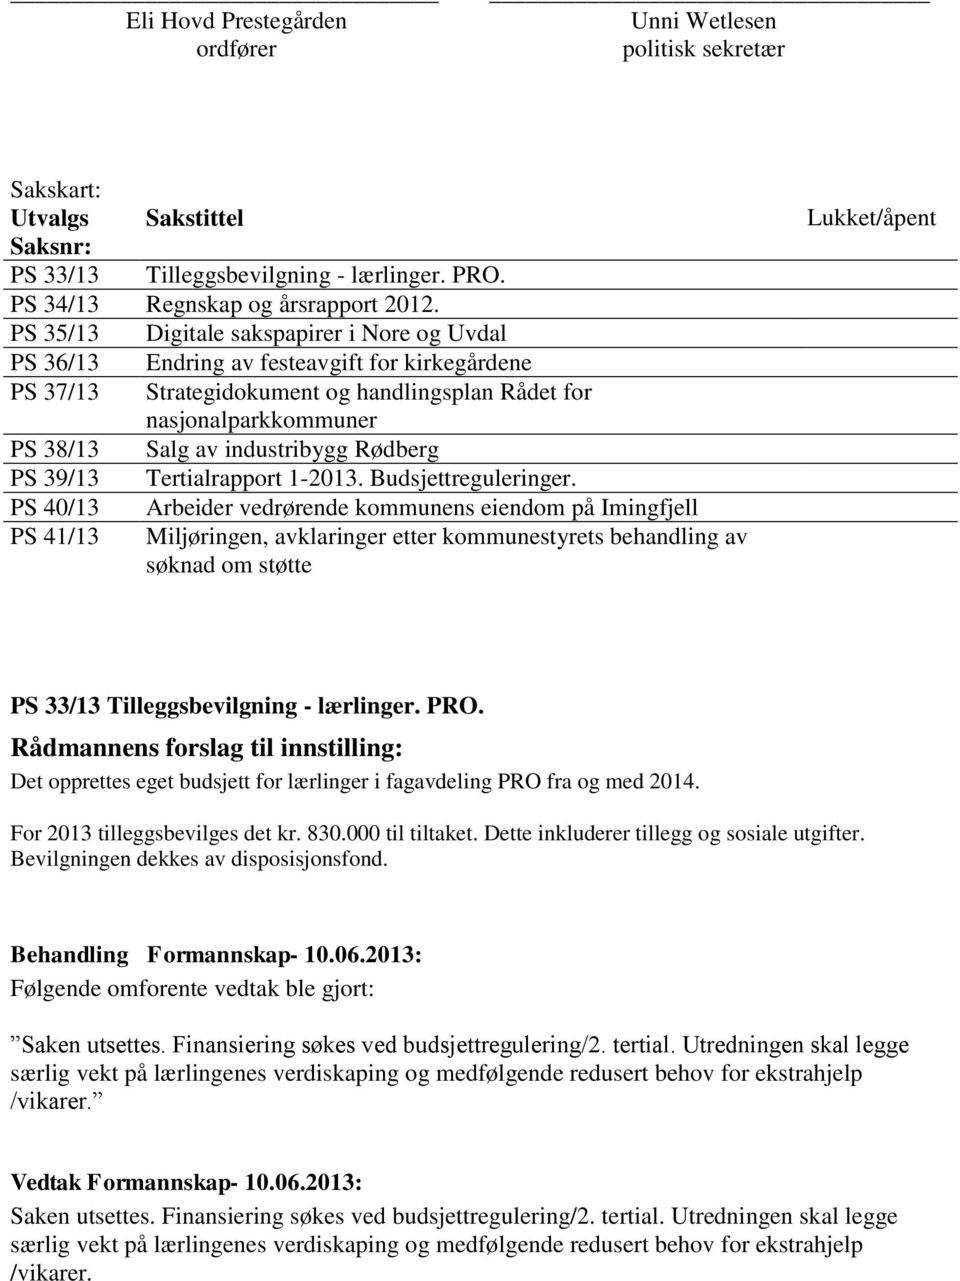 Rødberg PS 39/13 Tertialrapport 1-2013. Budsjettreguleringer.